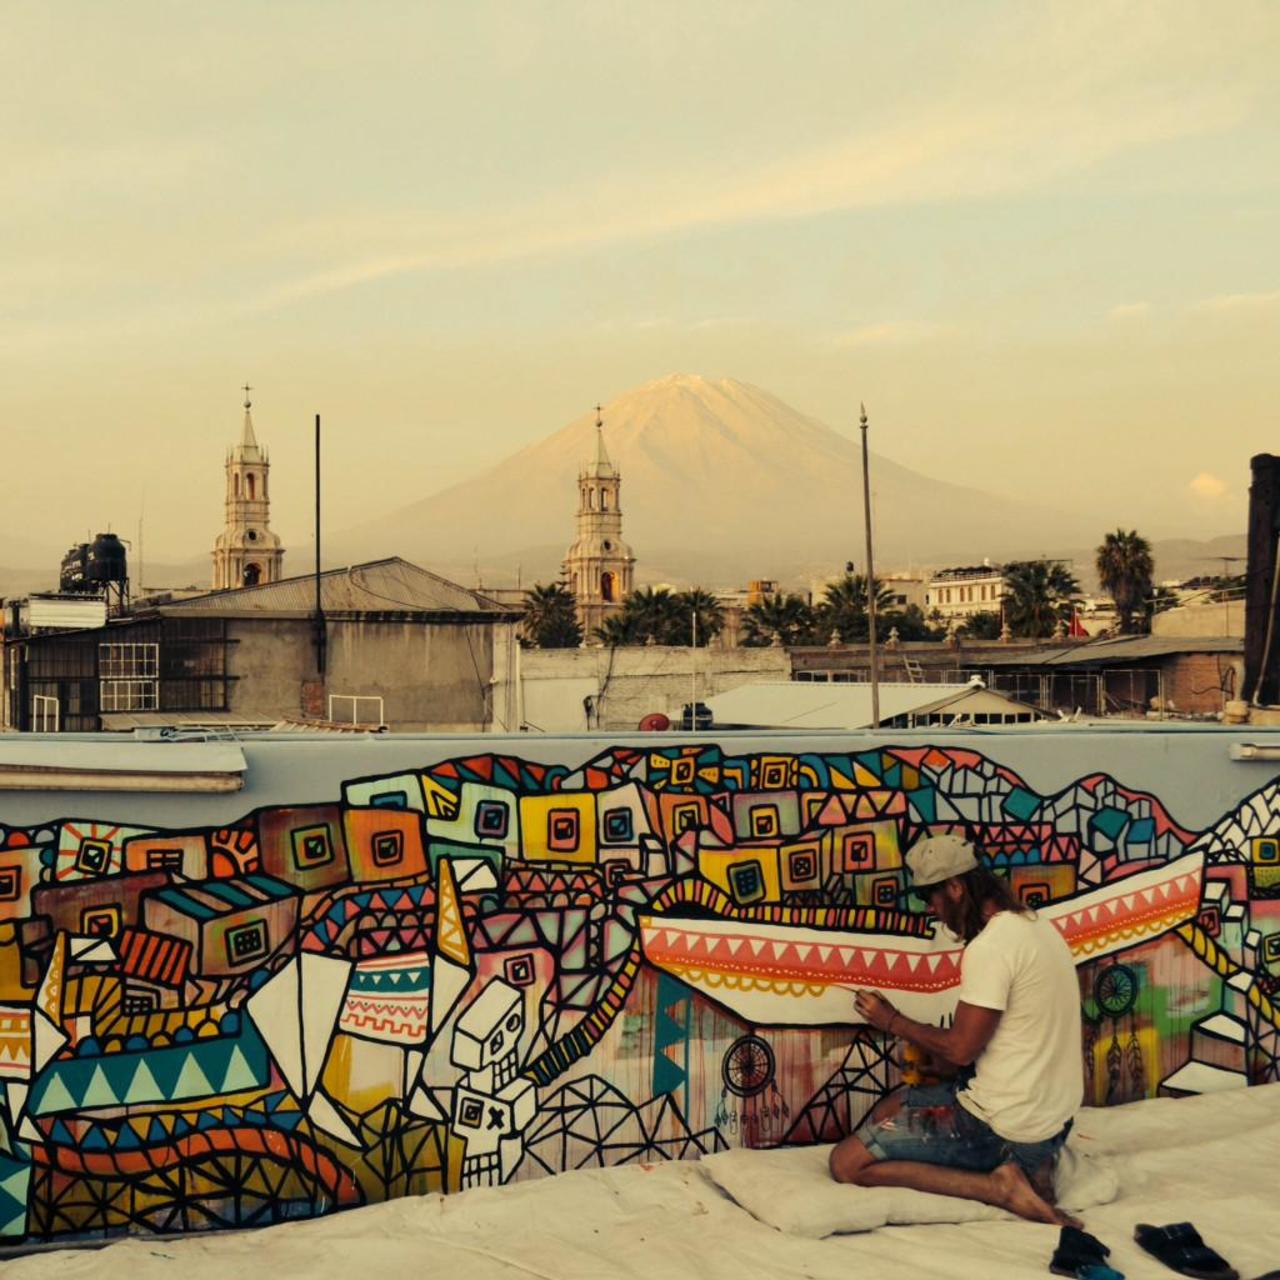 RT @artbelieve: Artwork in Peru #streetart #artandbelieve #artbelieve #graffiti #design #linedrawing #colour #pattern http://t.co/kAiGbLWZ5m